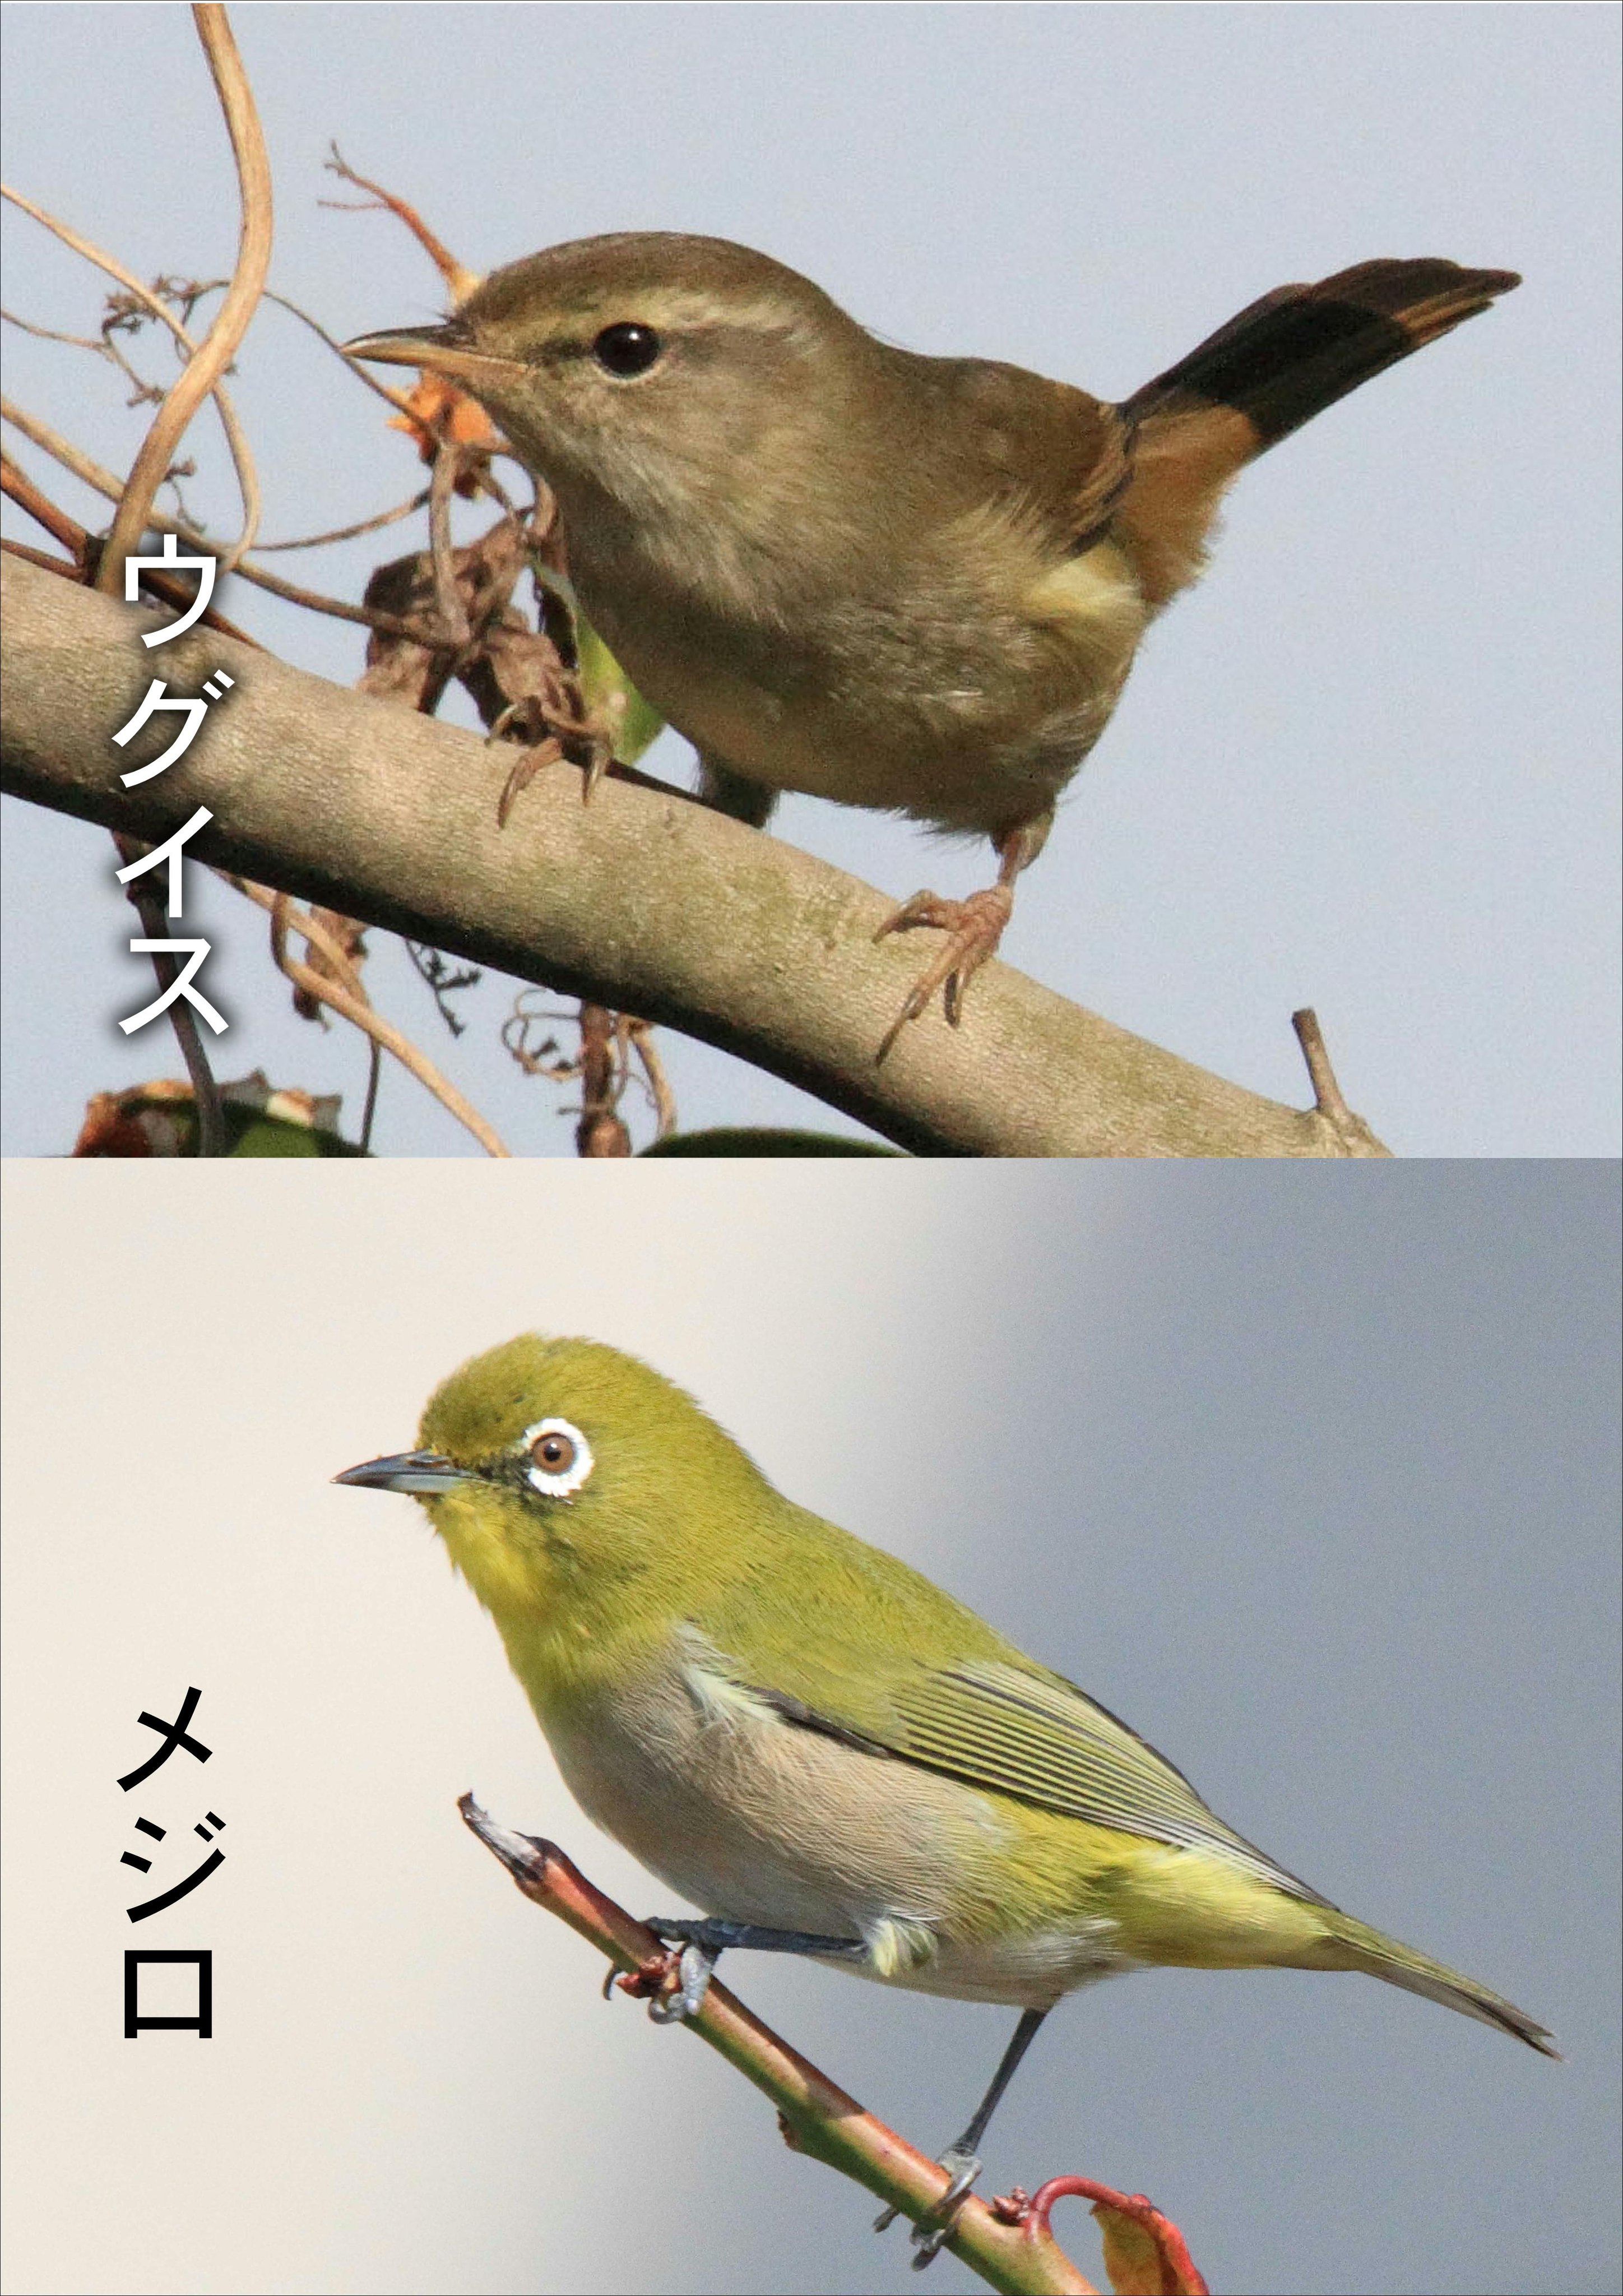 片柳弘史 この季節 梅の枝にとまった明るい緑色の鳥を見てウグイスと思っておられる方が多いようですが 実はその鳥はメジロです メジロの方が ウグイス色 なので まぎらわしいですね O T Co Gwil2nu7za Twitter